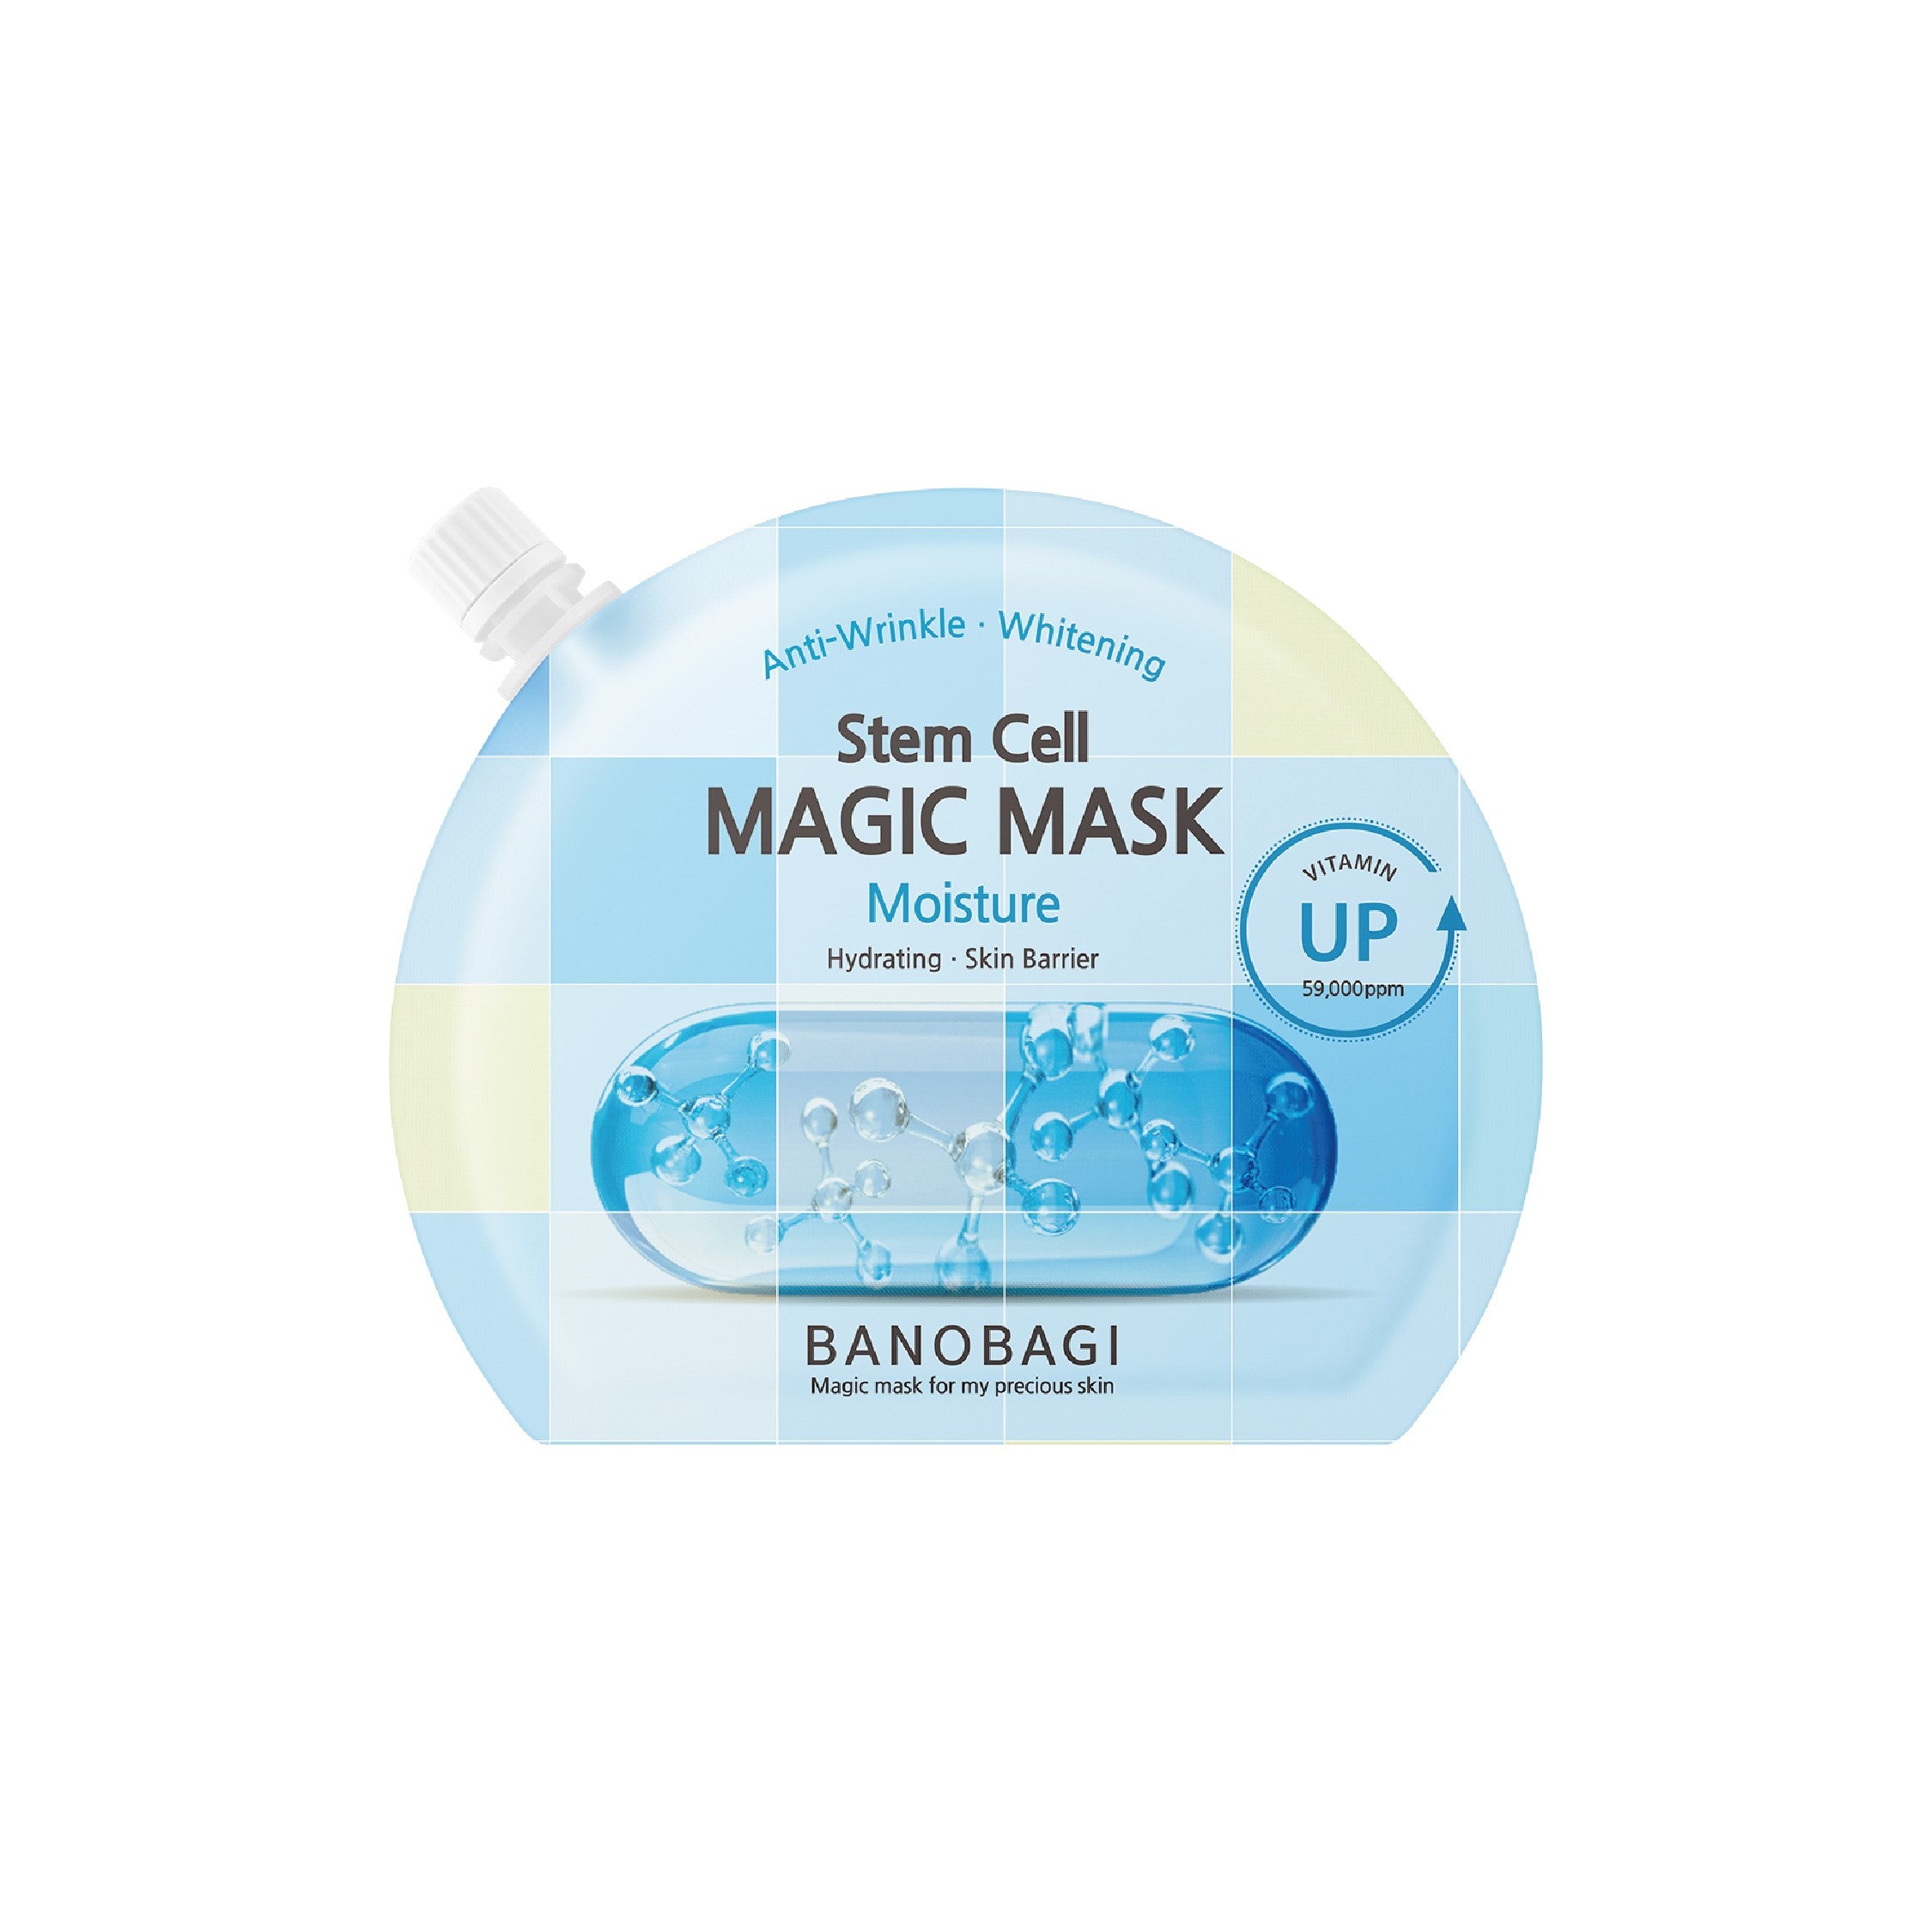 Stem Cell Magic Mask - Moisture